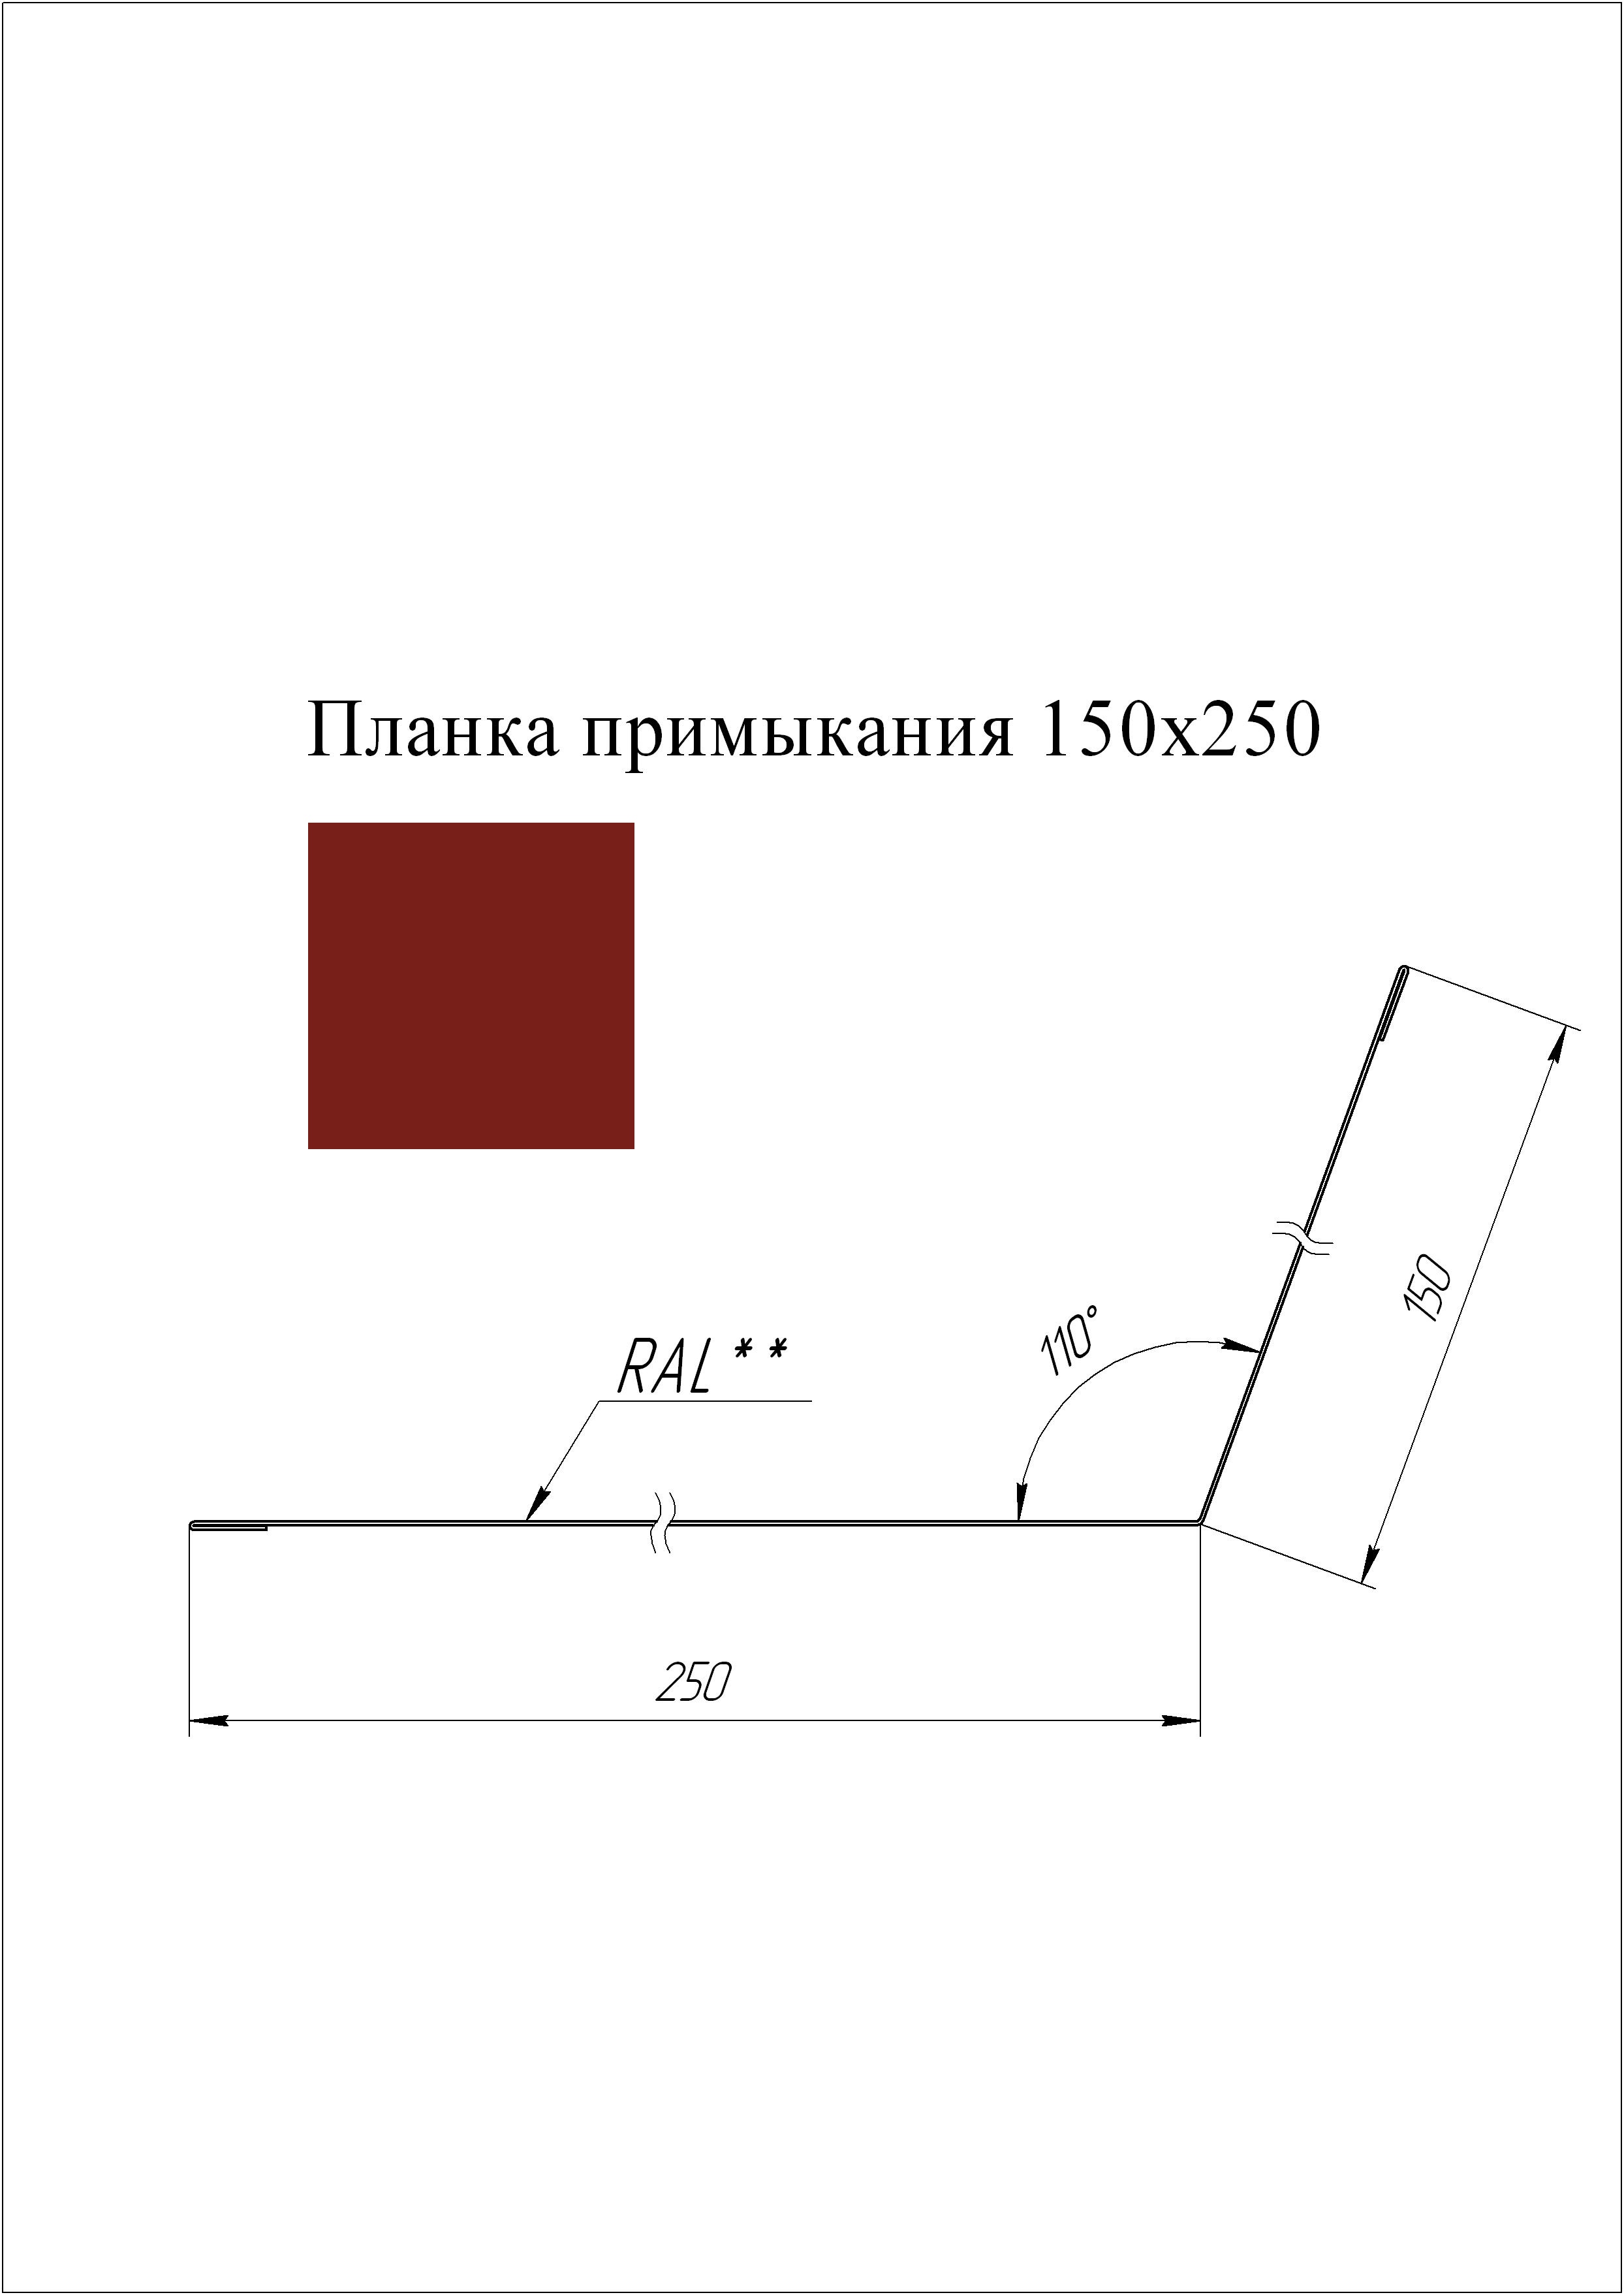 Планка примыкания 150*250 мм L=2 м GL PE-полиэстер 0,45 RAL 3011 - коричнево-красный